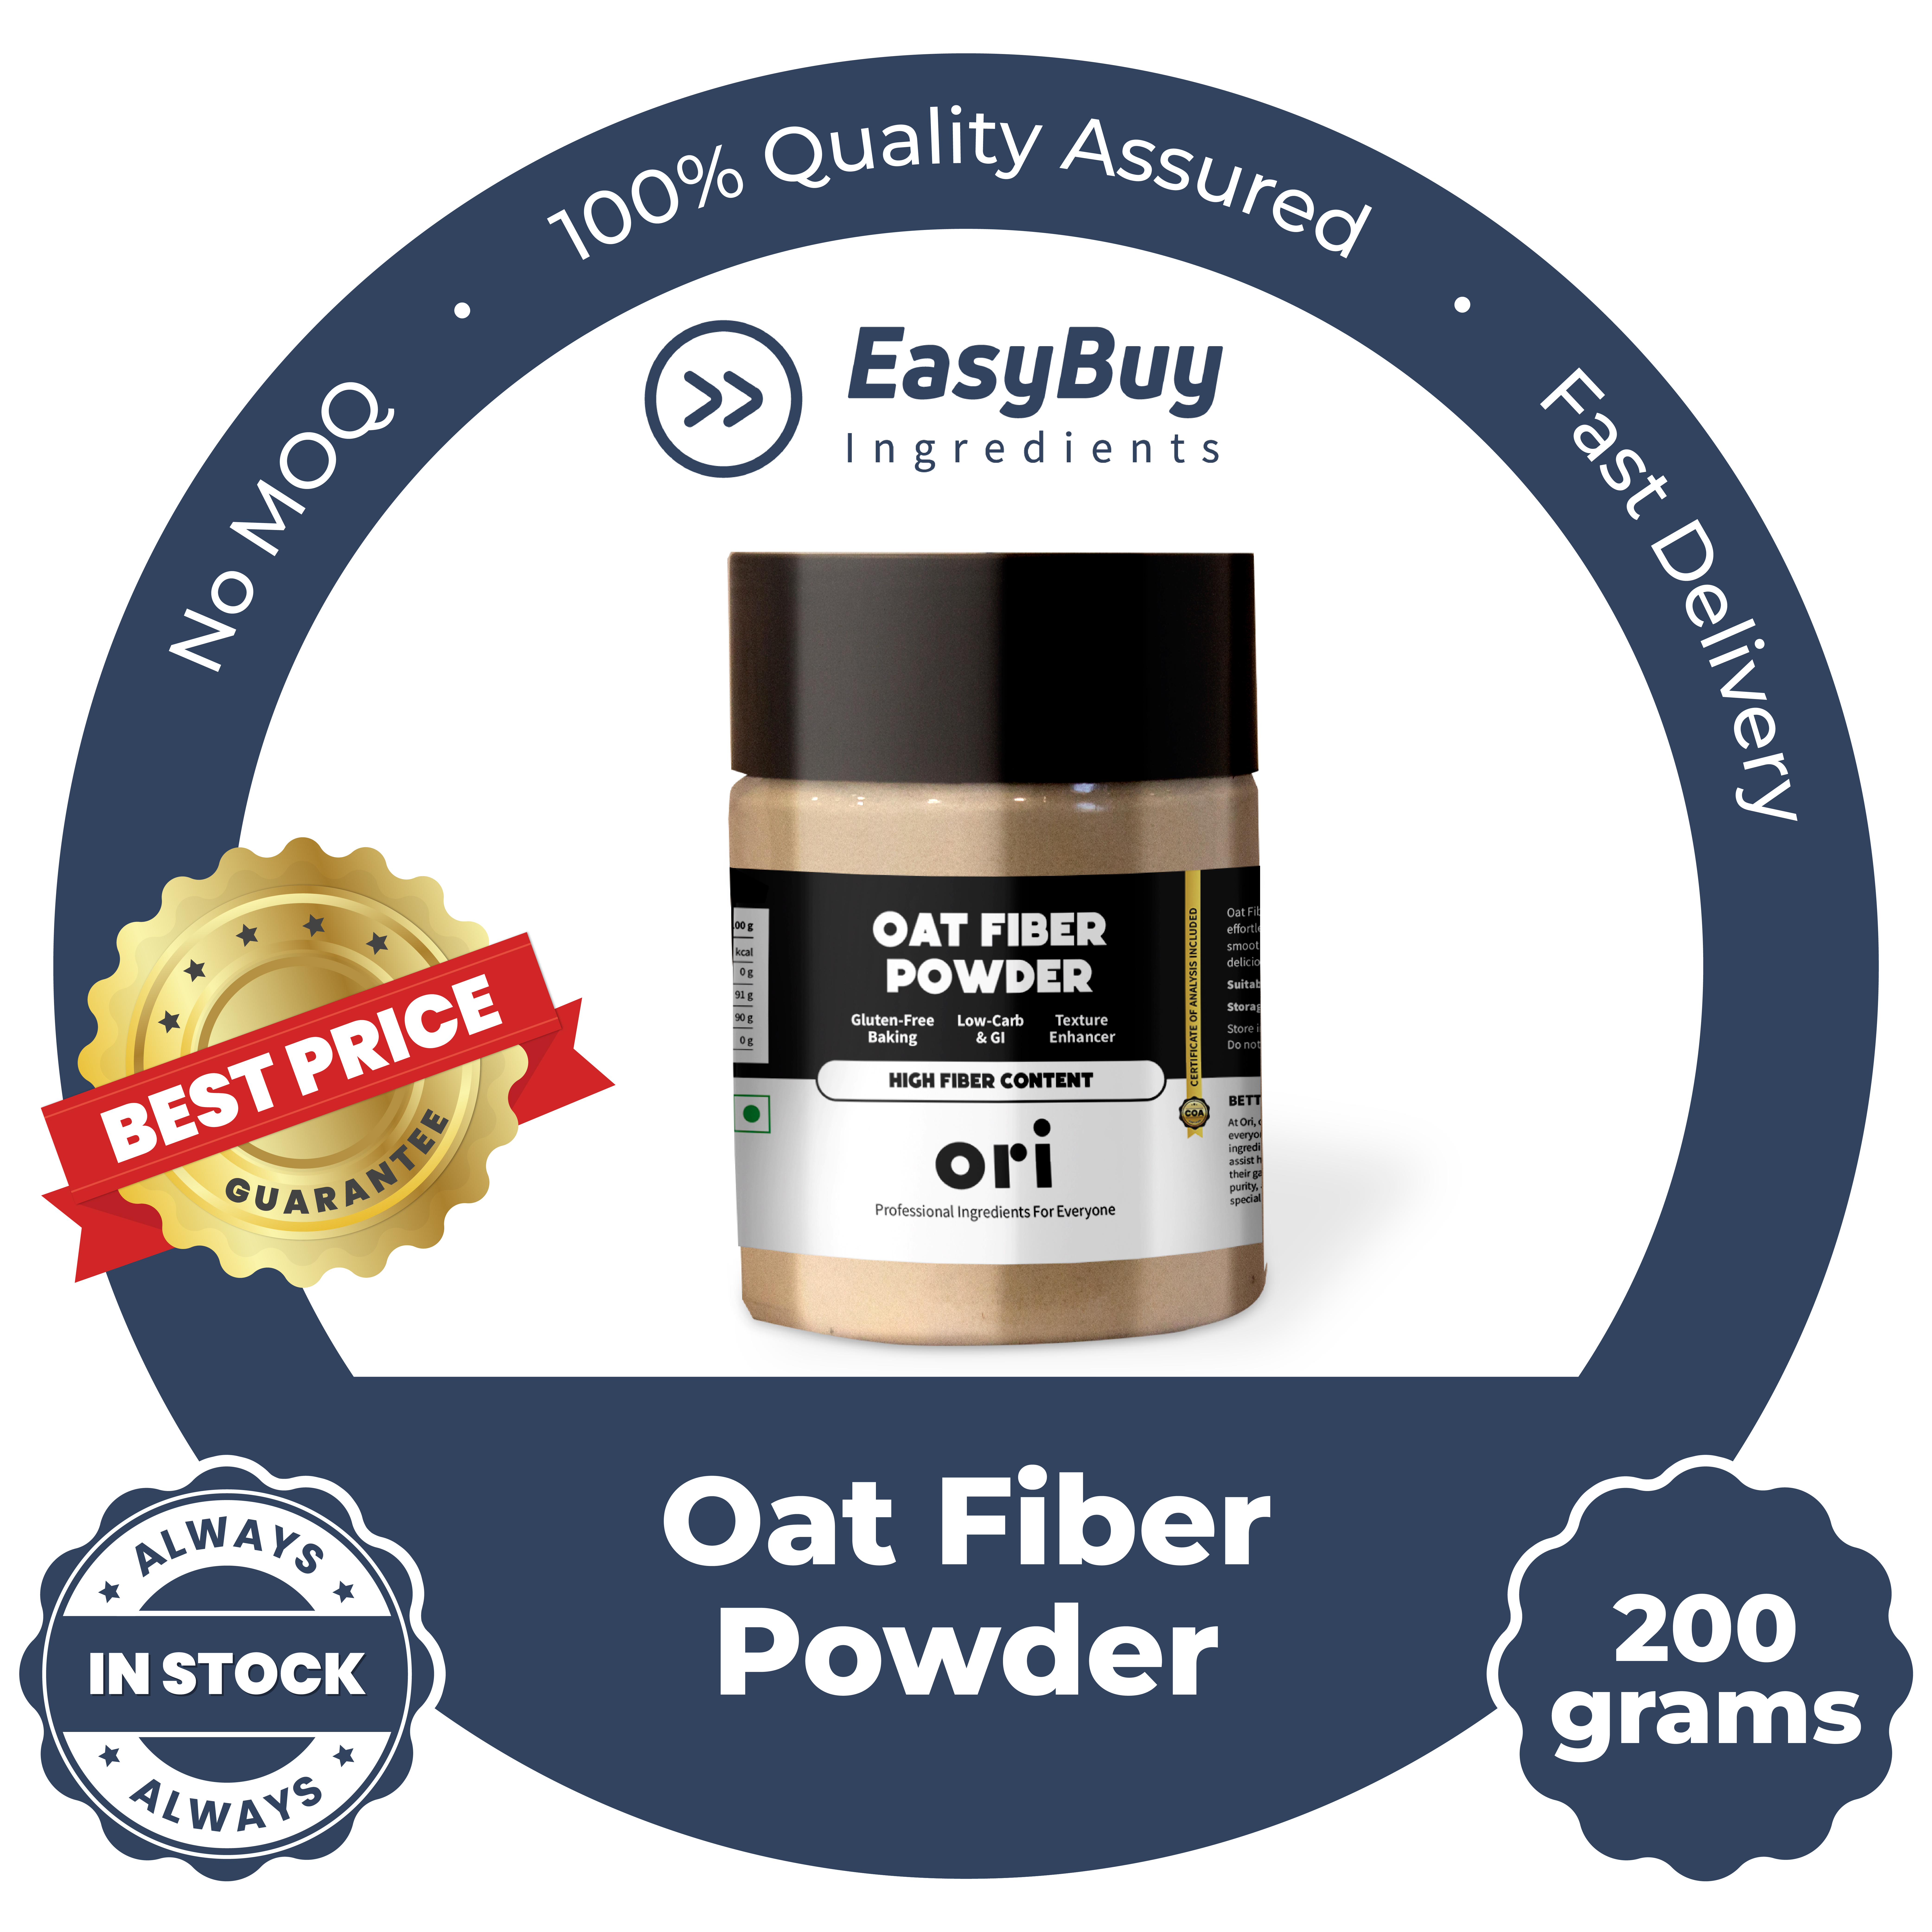 Oat Fiber Powder - High Fiber Content